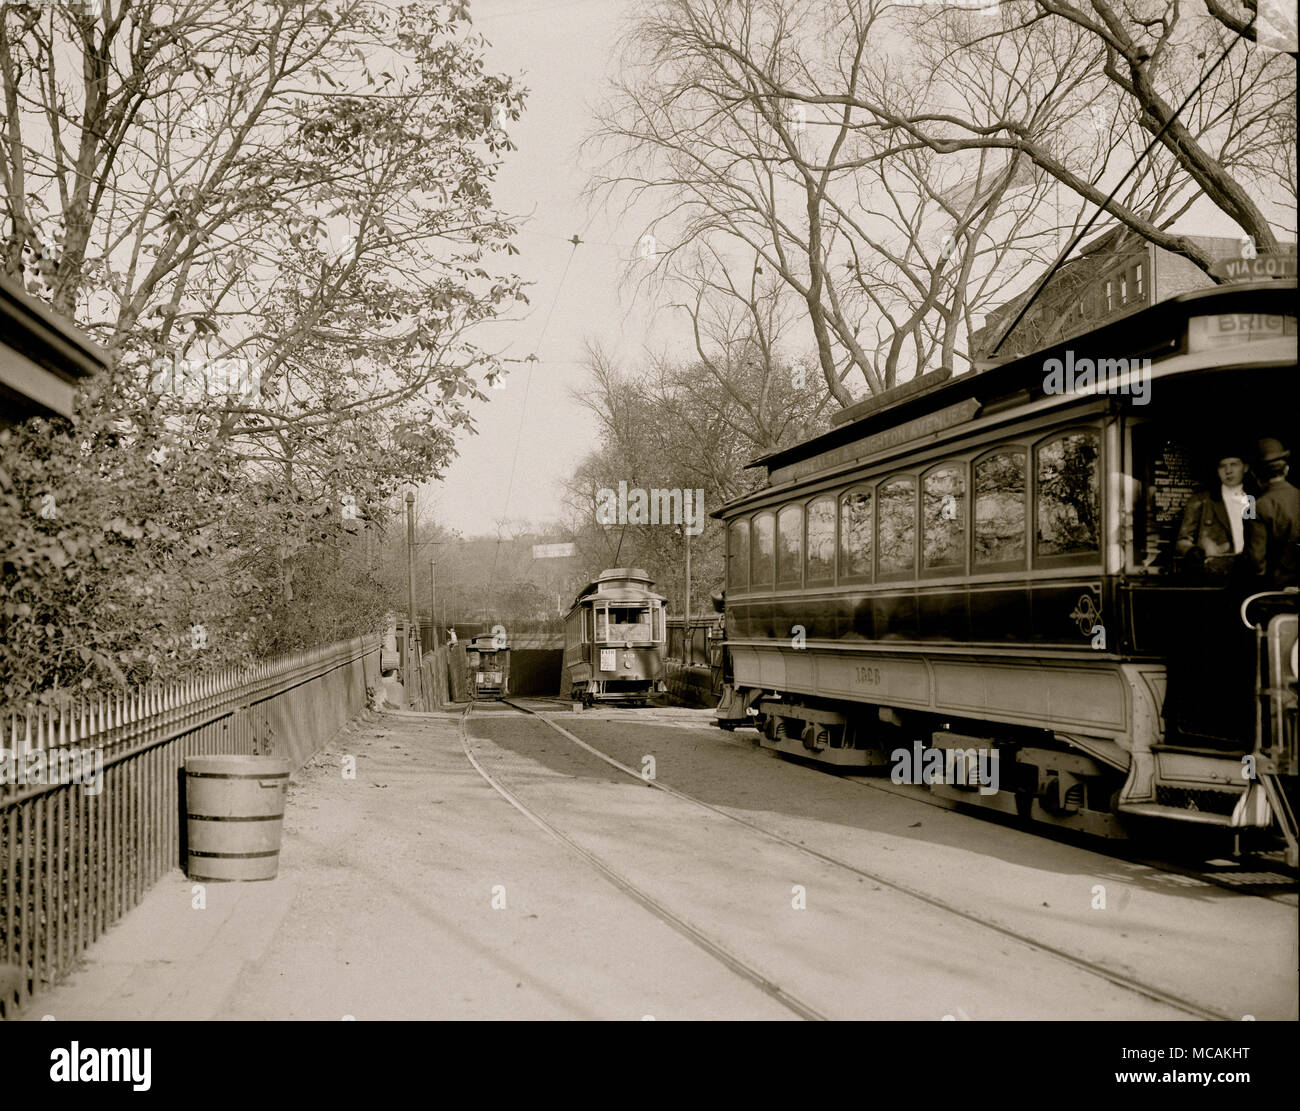 Straßenbahn Staus in der Innenstadt von Boston führte zur Gründung von U-Bahnen und erhöhten Schiene, die ehemalige im Jahre 1897 und die zweite im Jahre 1901. Das Tremont Street U-Bahn war der erste rapid transit Tunnel in den Vereinigten Staaten. Der Grad - getrennt Eisenbahnen zusätzliche Transportkapazität und vermeidet Verzögerungen, die durch Kreuzungen mit Straßen verursacht. Die erste Hochbahn und der erste rapid transit Line in Boston waren drei Jahre vor der ersten U-Bahn-Linie der New Yorker U-Bahn gebaut, aber 34 Jahre nach der ersten Londoner U-Bahn Linien, und noch lange nach dem ersten Hochbahn Stockfoto